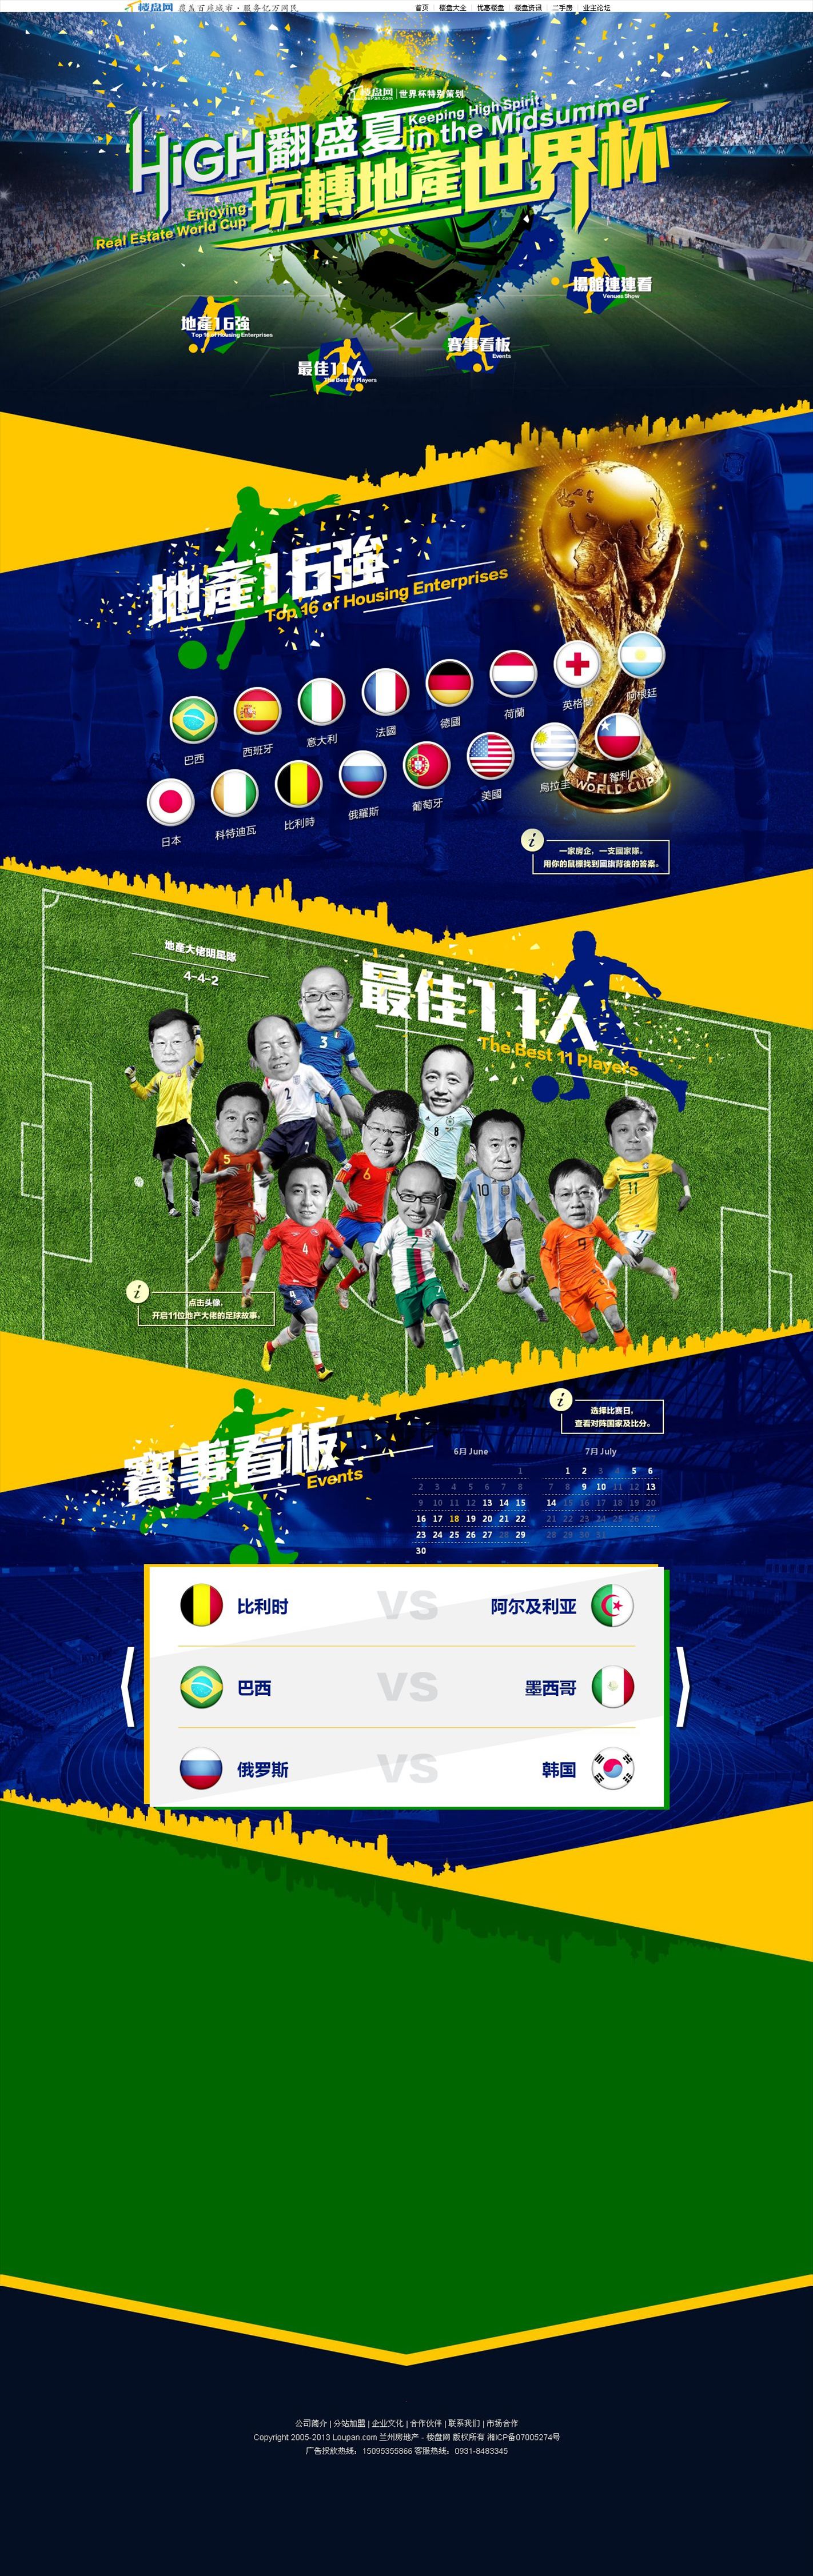 楼盘网巴西世界杯专题页面模板html源码下载